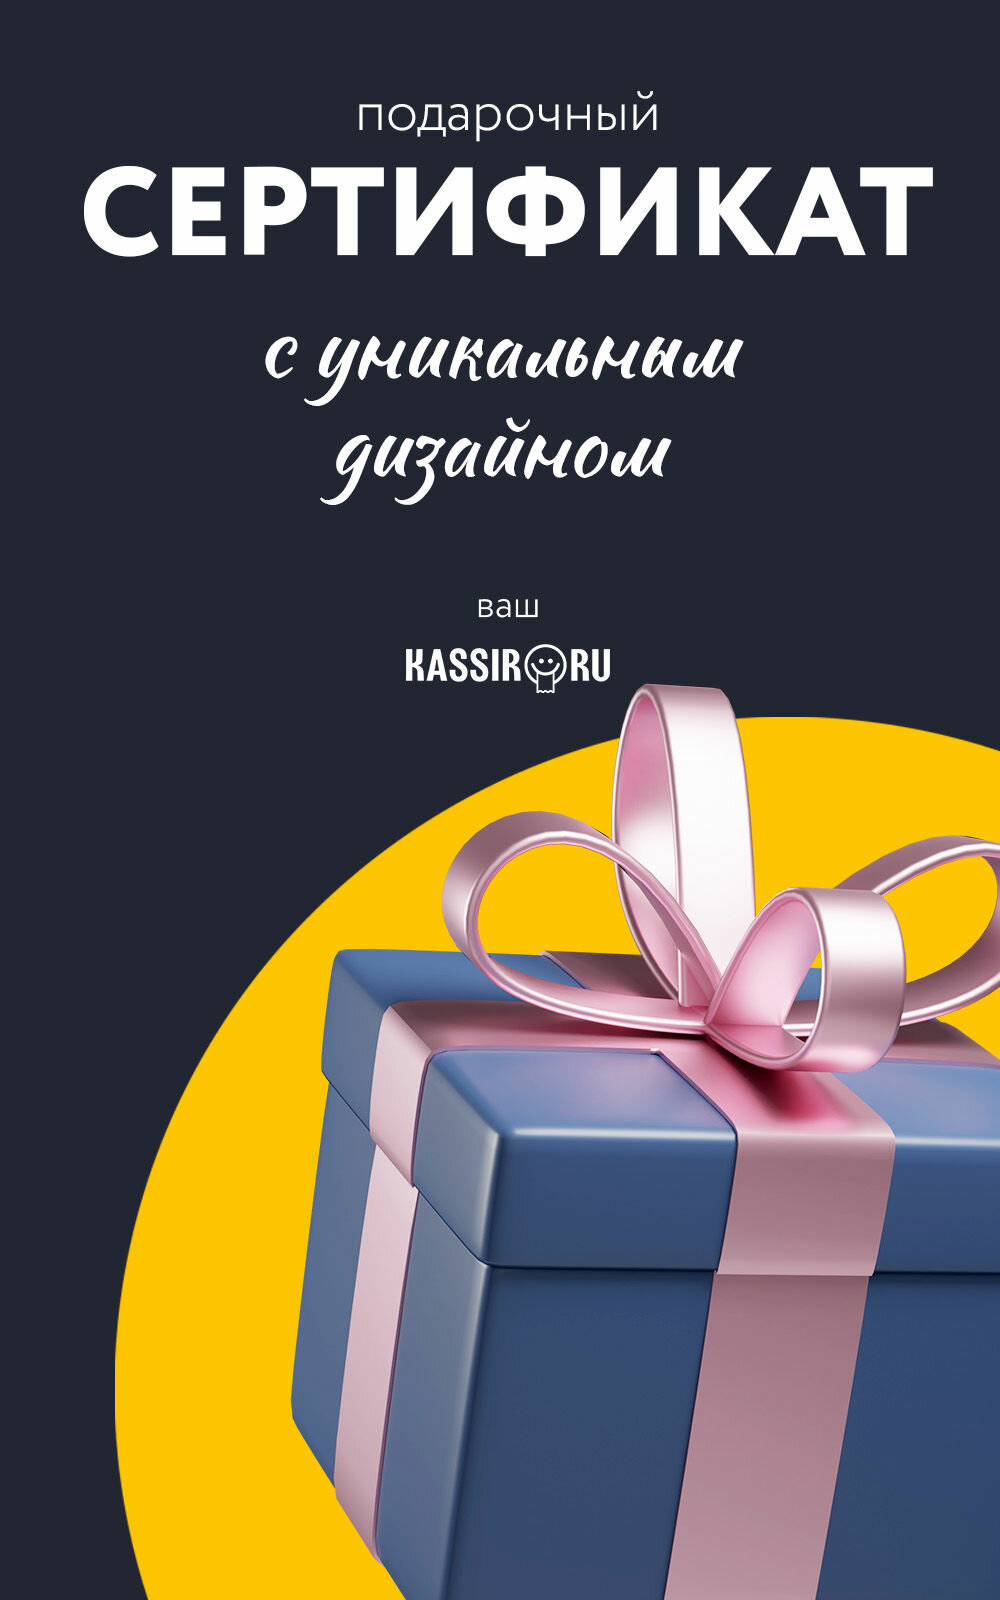 Подарочный сертификат Kassir.ru 500 руб.